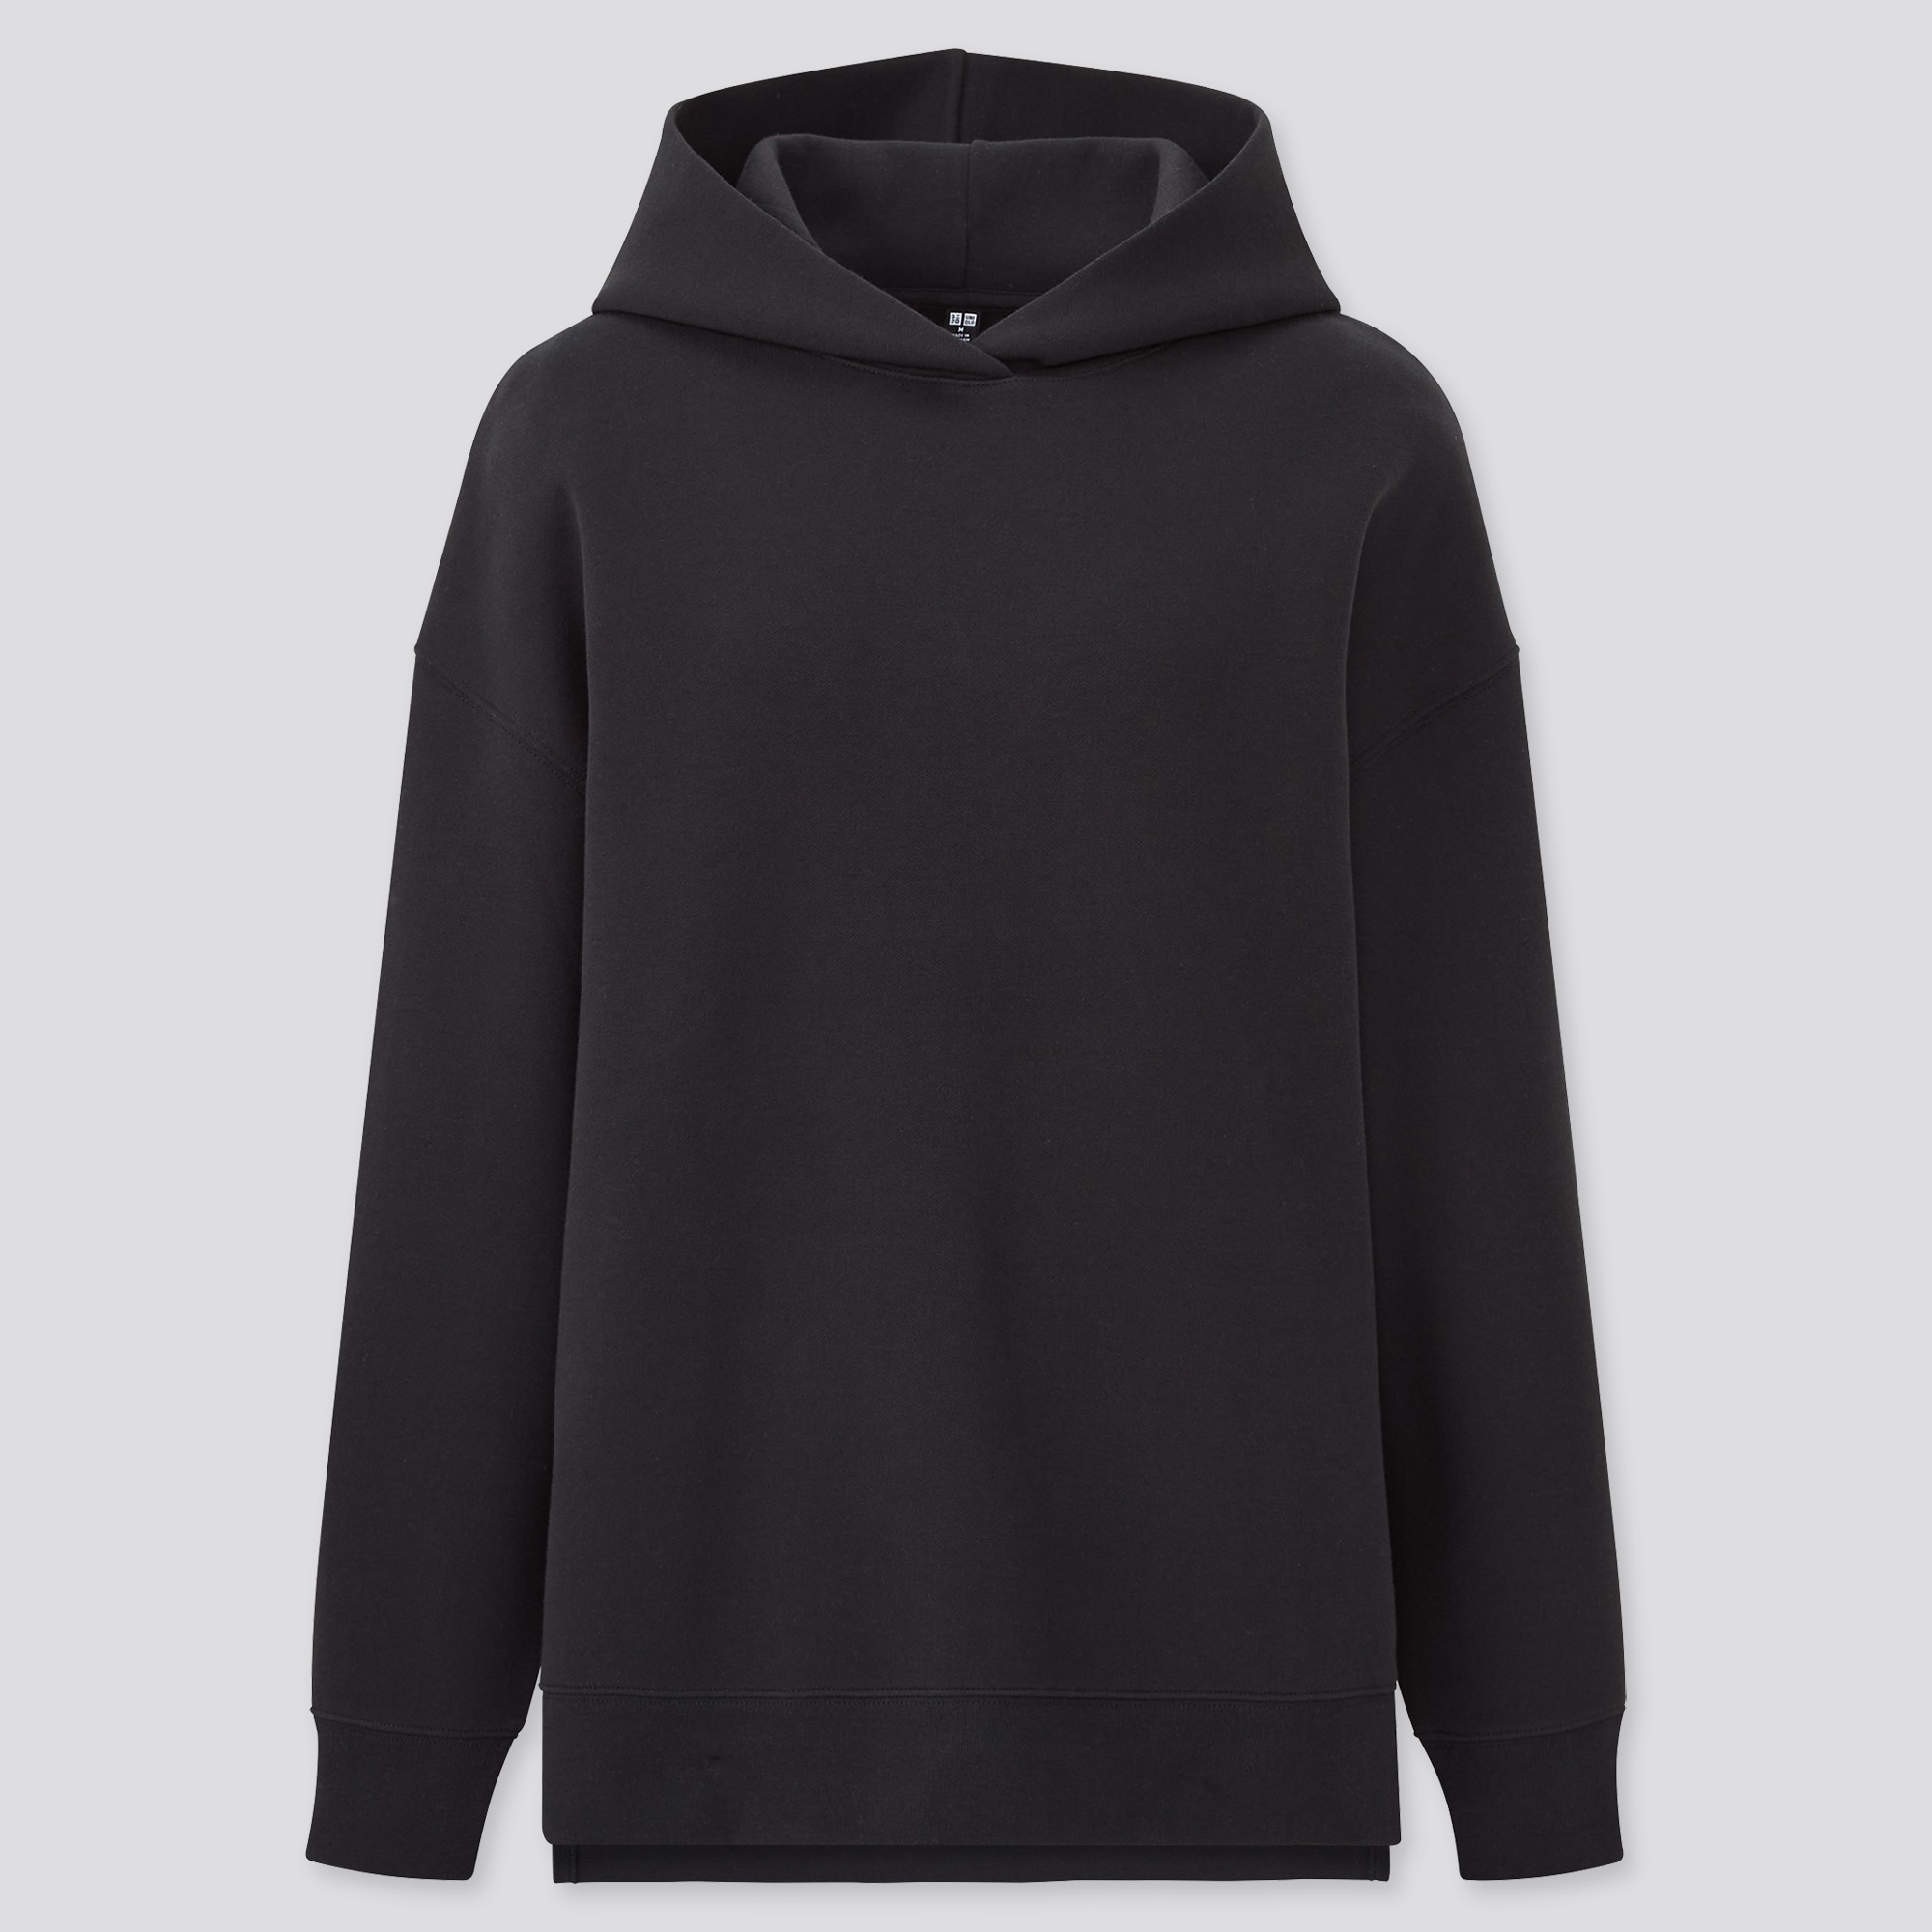 Uniqlo U Sweat LongSleeve Pullover Hoodie Size XS  eBay